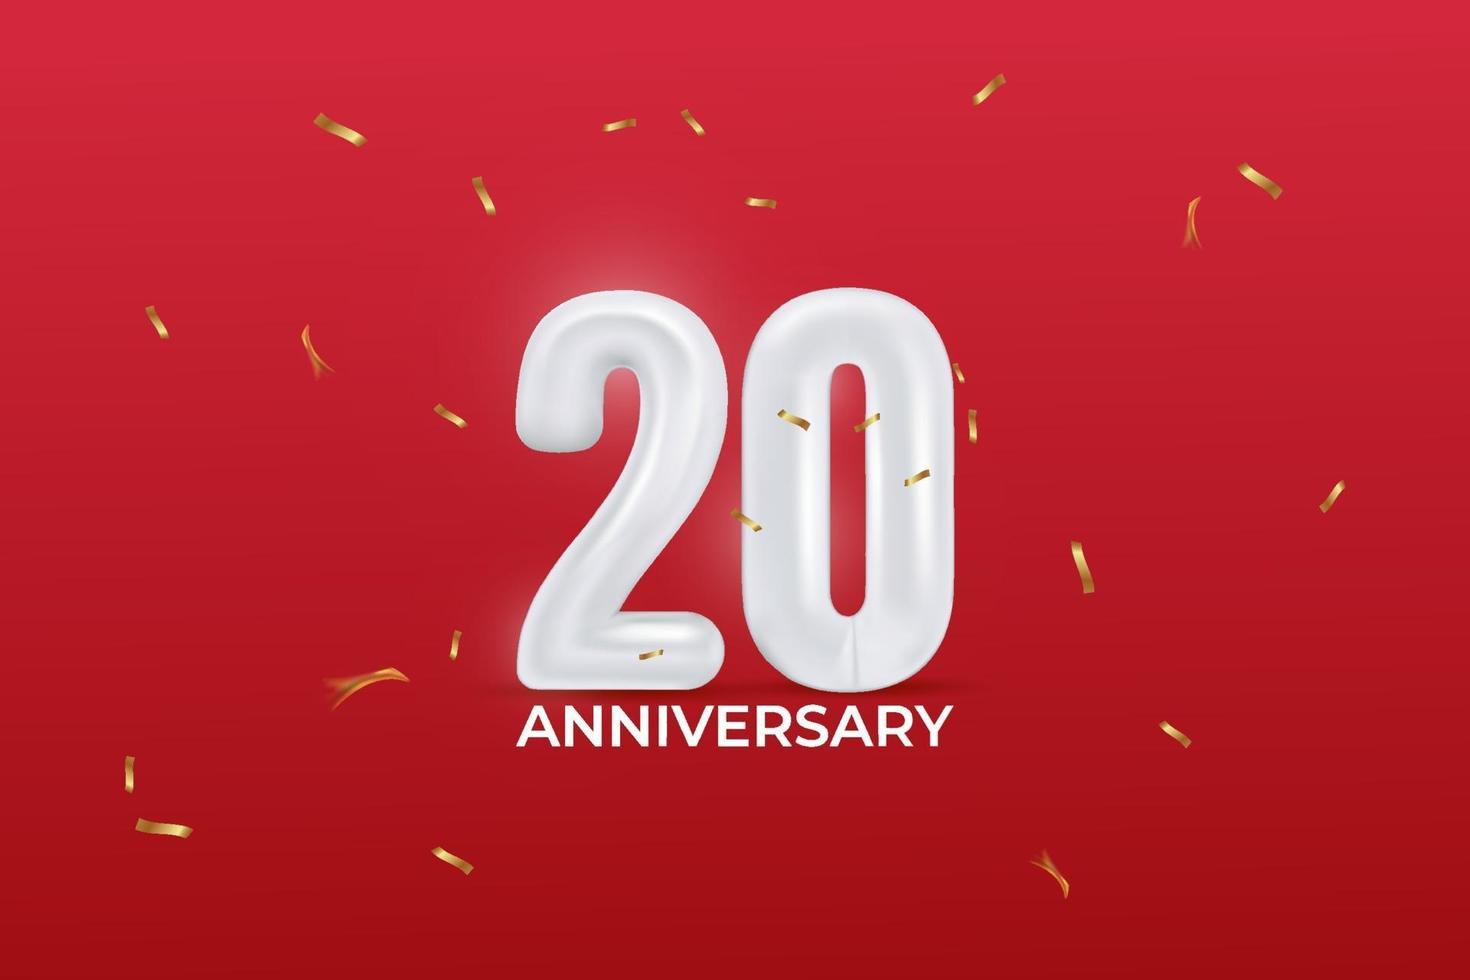 Celebrazione del 20 ° anniversario. illustrazione vettoriale con numero di palloncino, coriandoli scintillanti su sfondo rosso.